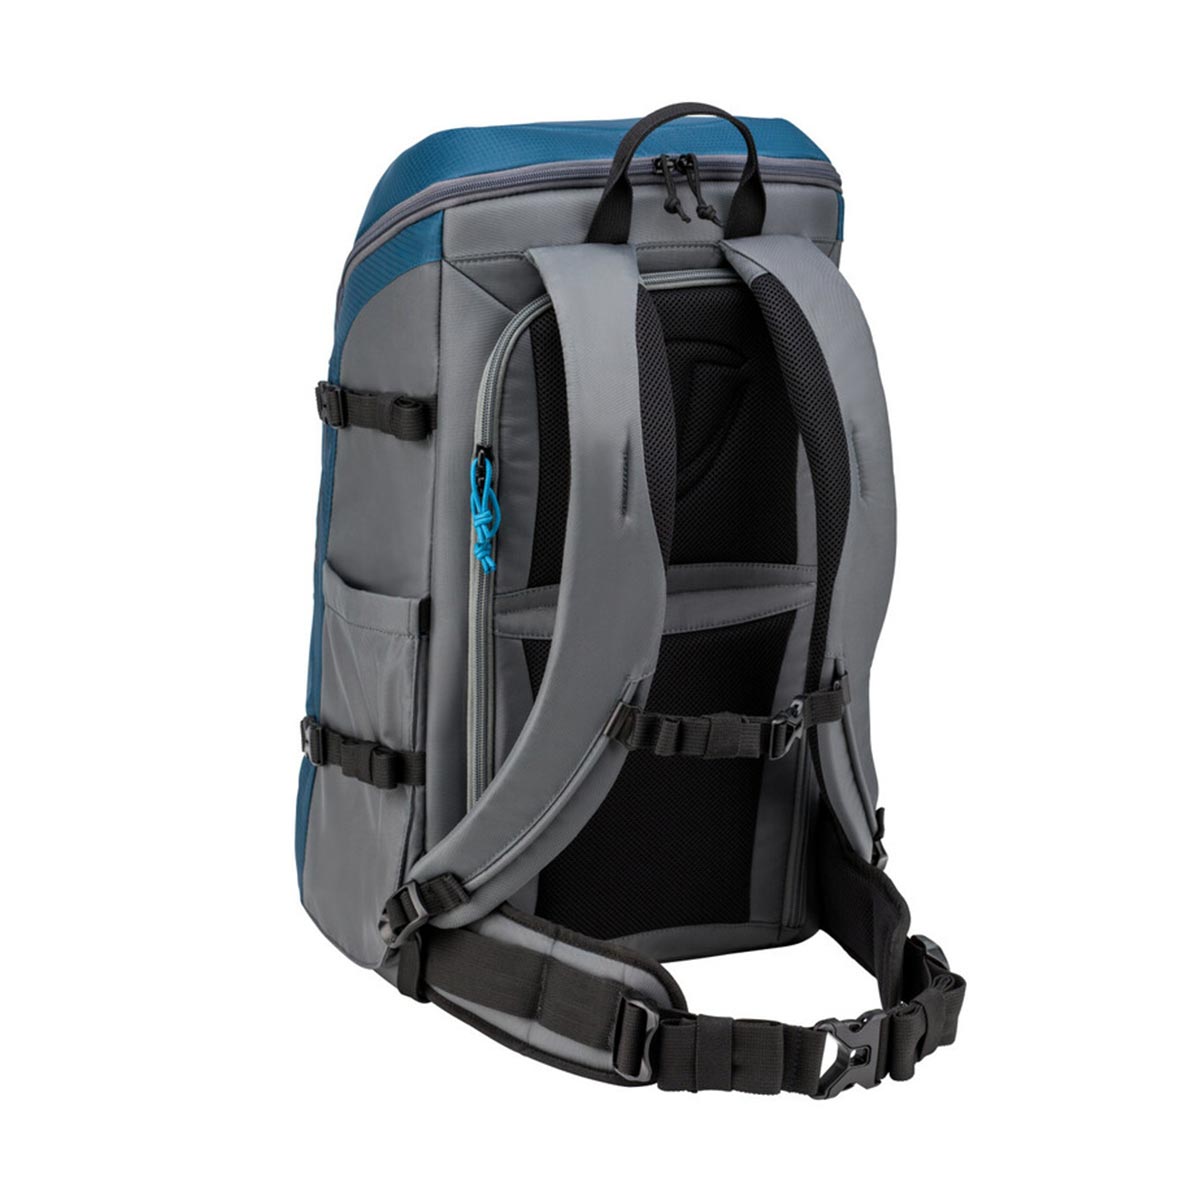 Tenba Solstice 24L Camera Backpack (Blue)